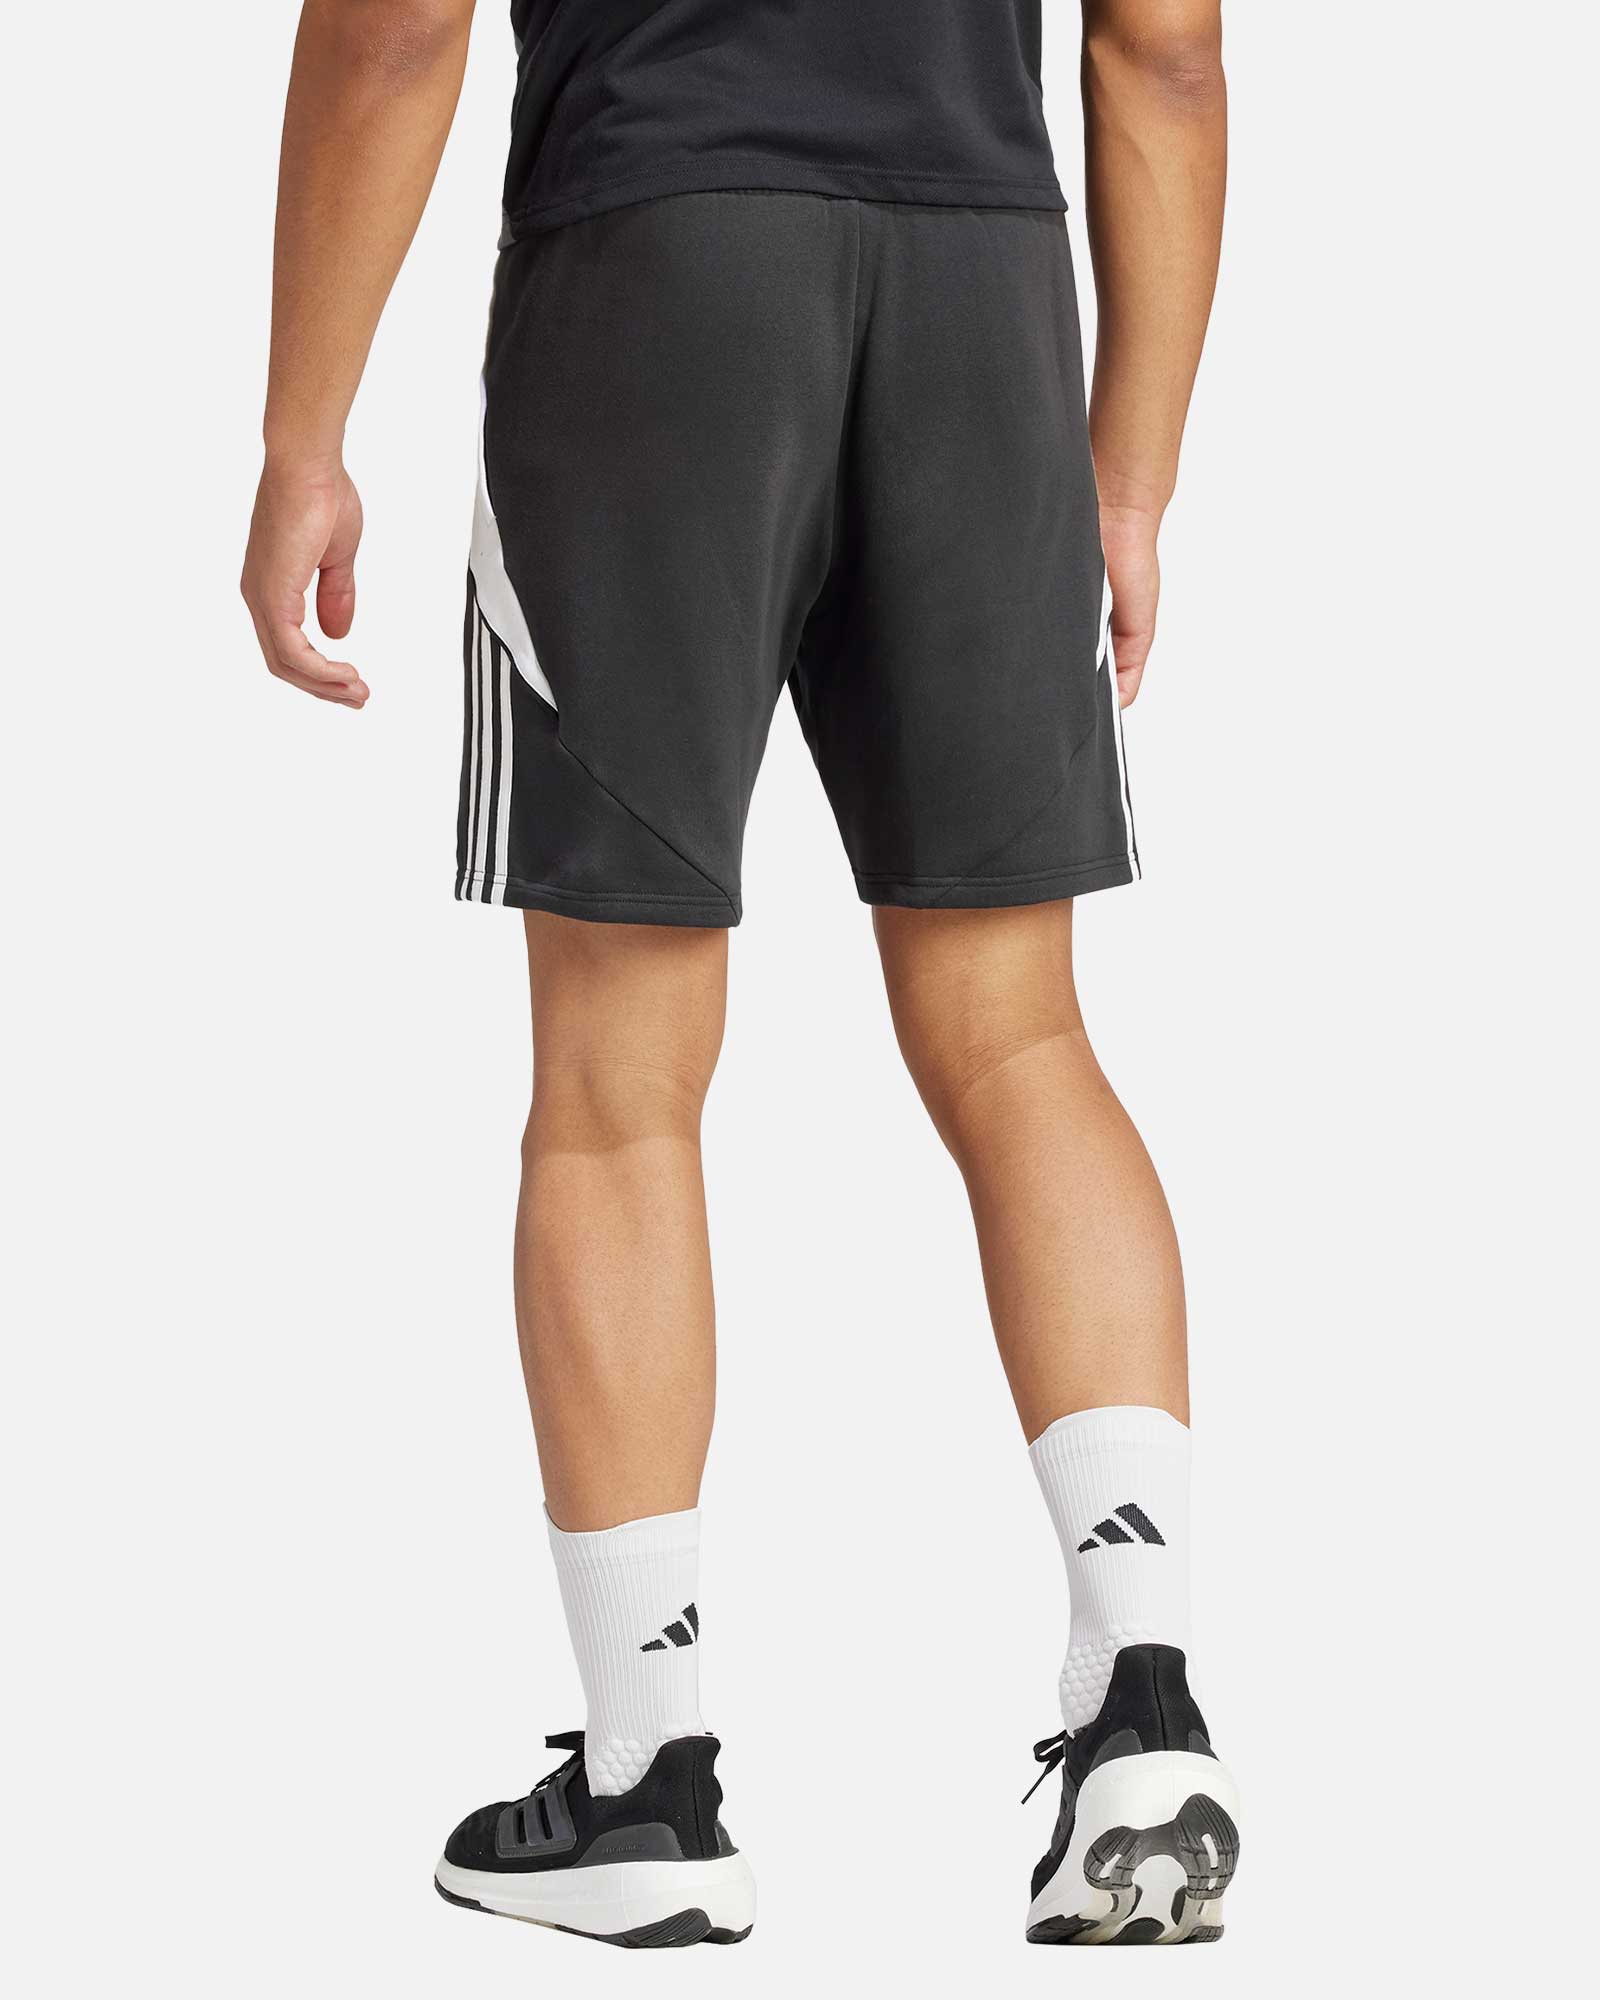 Pantalón adidas Tiro 24 Swoosh - Fútbol Factory